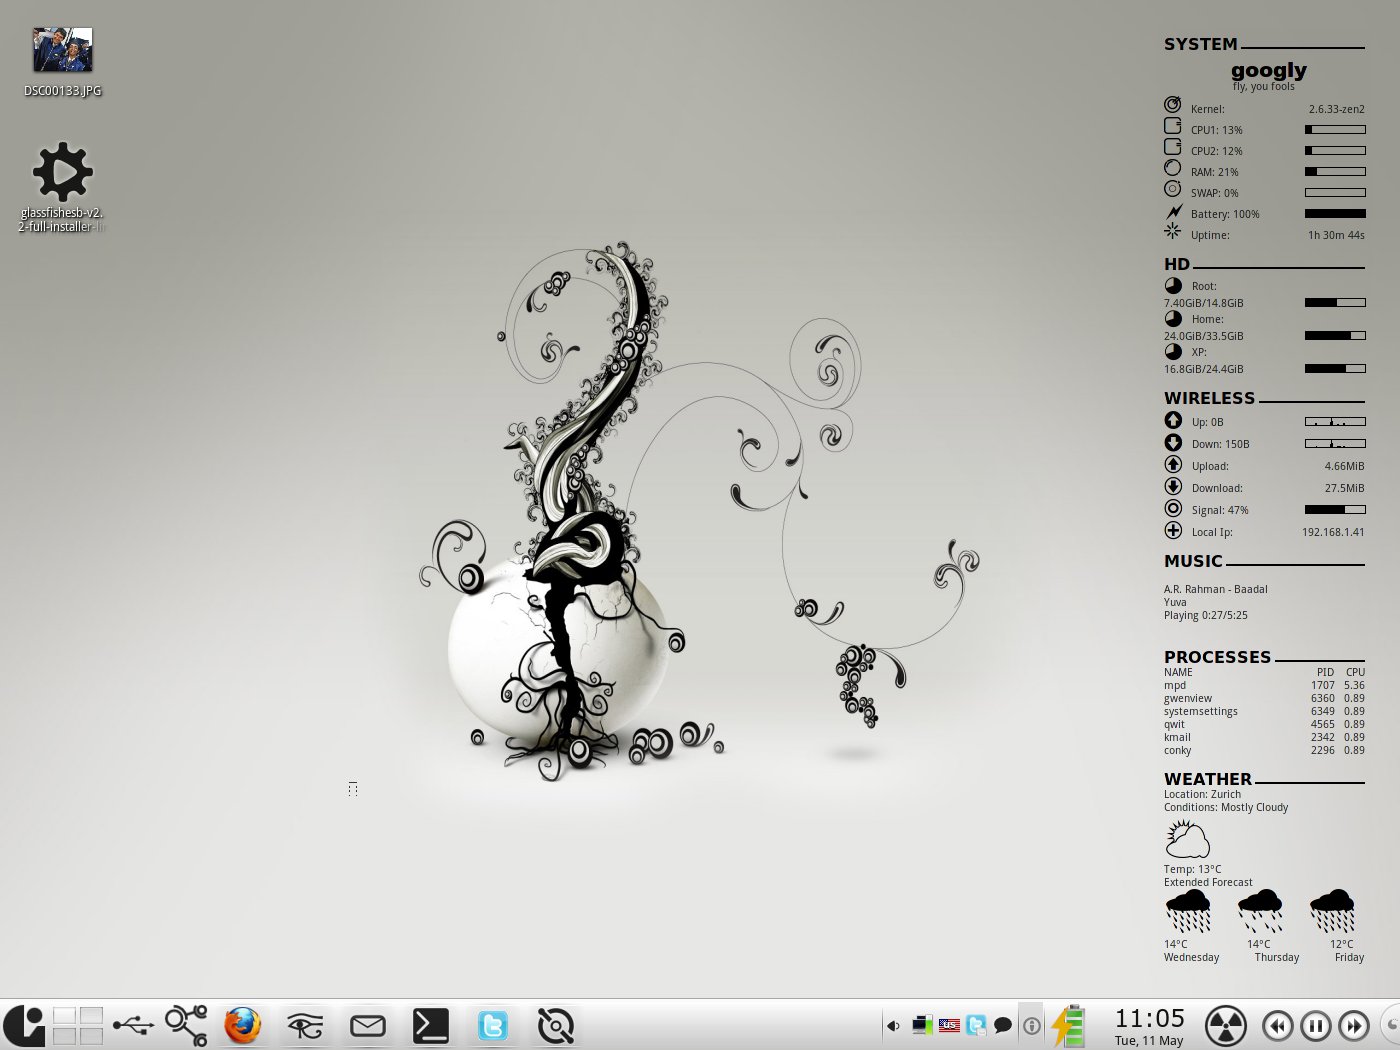 A clean view of the KDE Desktop